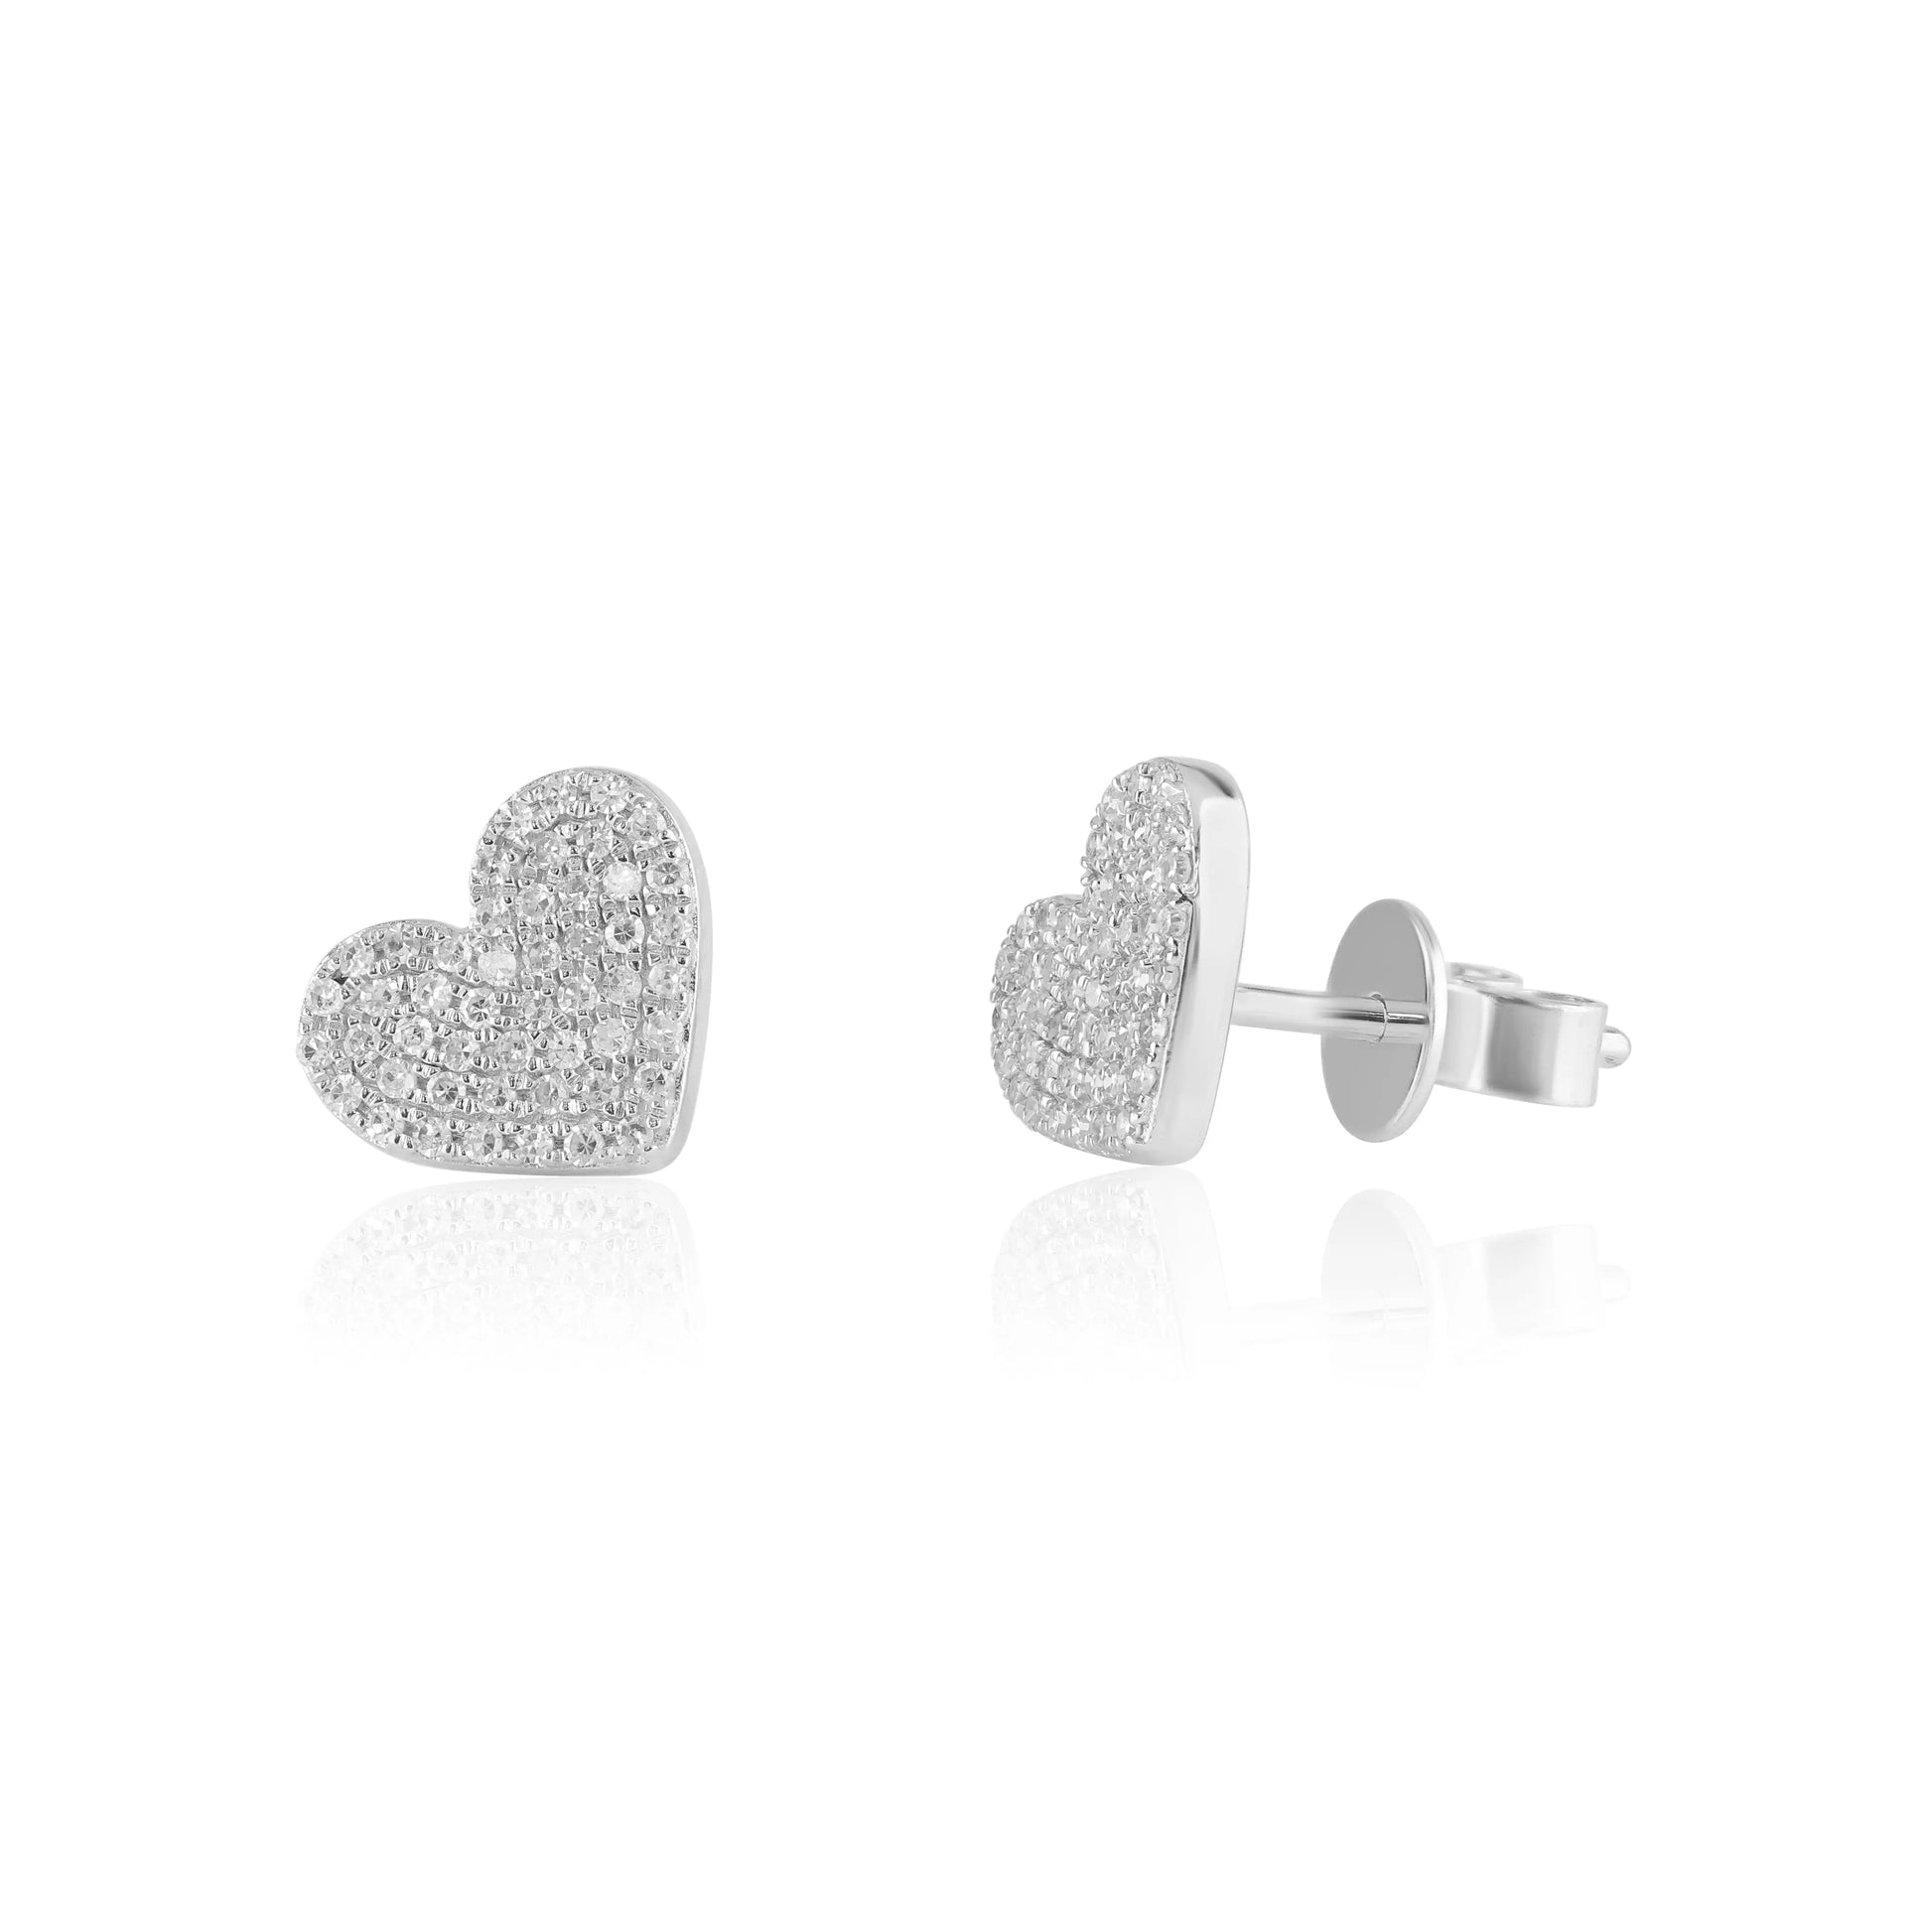 White Gold Earrings Pavé Heart Diamond Stud Earrings dansonjewelers Danson Jewelers 